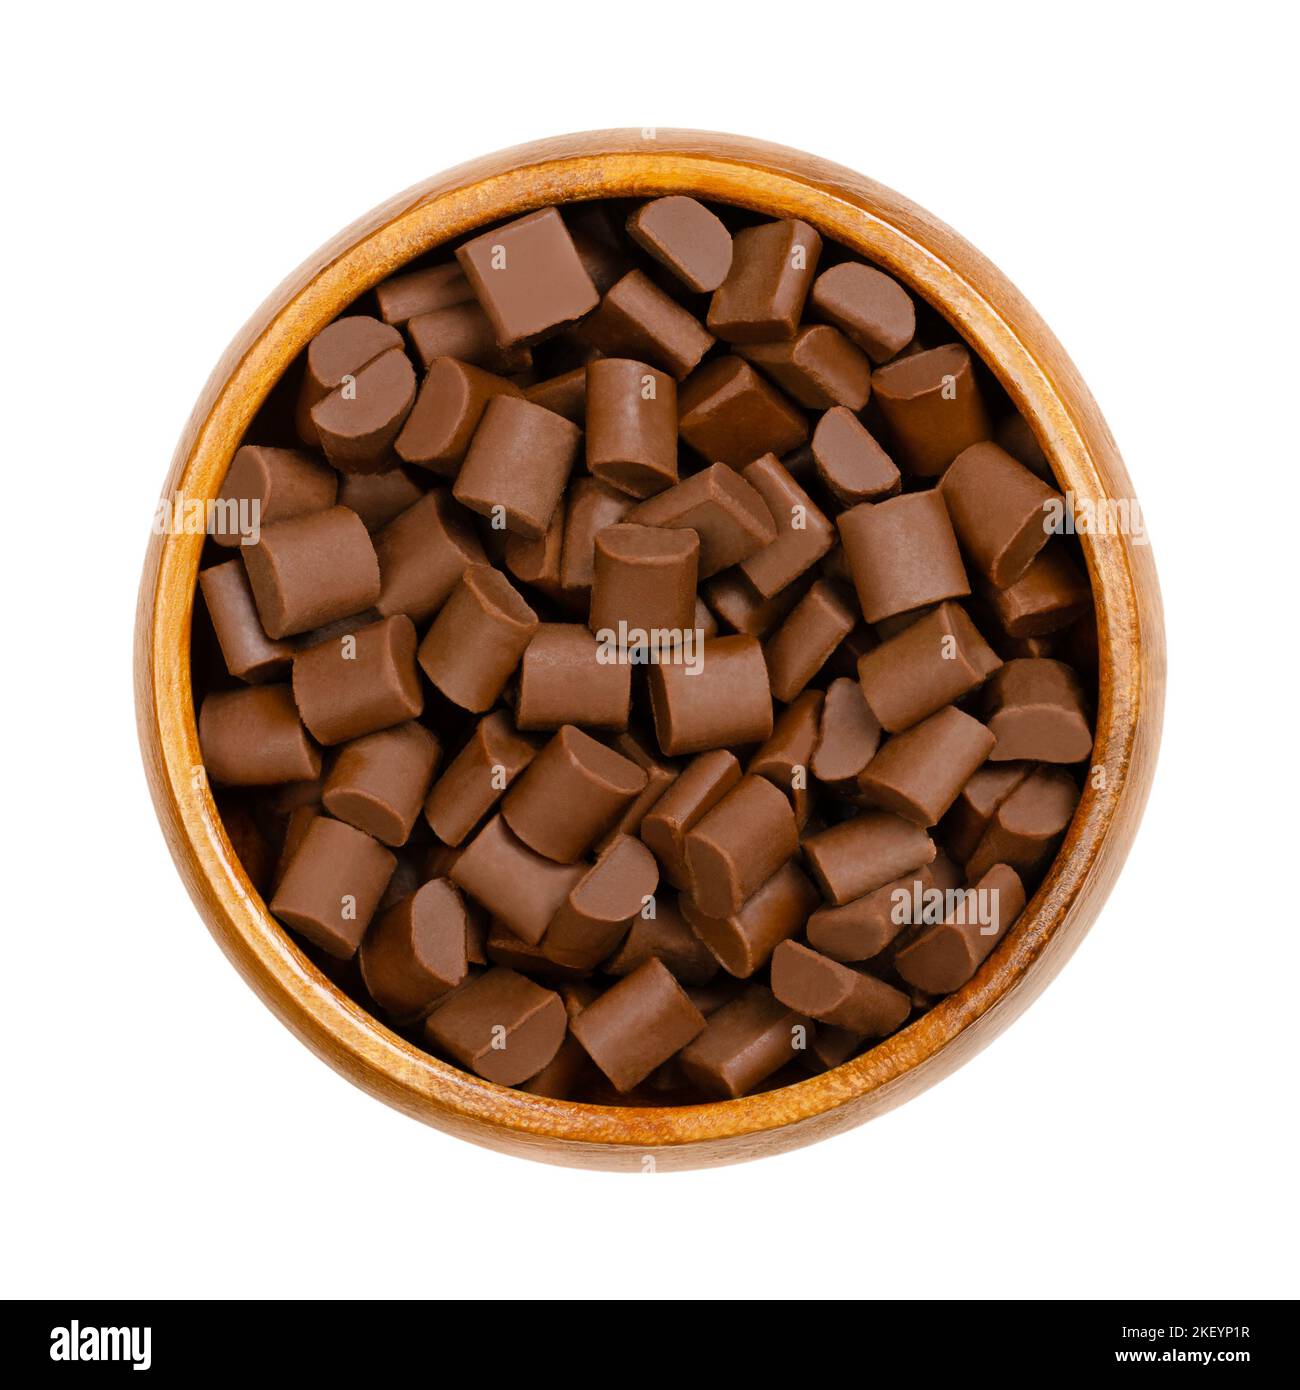 Morceaux de chocolat, dans un bol en bois. Croustilles et petits morceaux de chocolat au lait, utilisés comme ingrédient dans un certain nombre de desserts sucrés. Banque D'Images